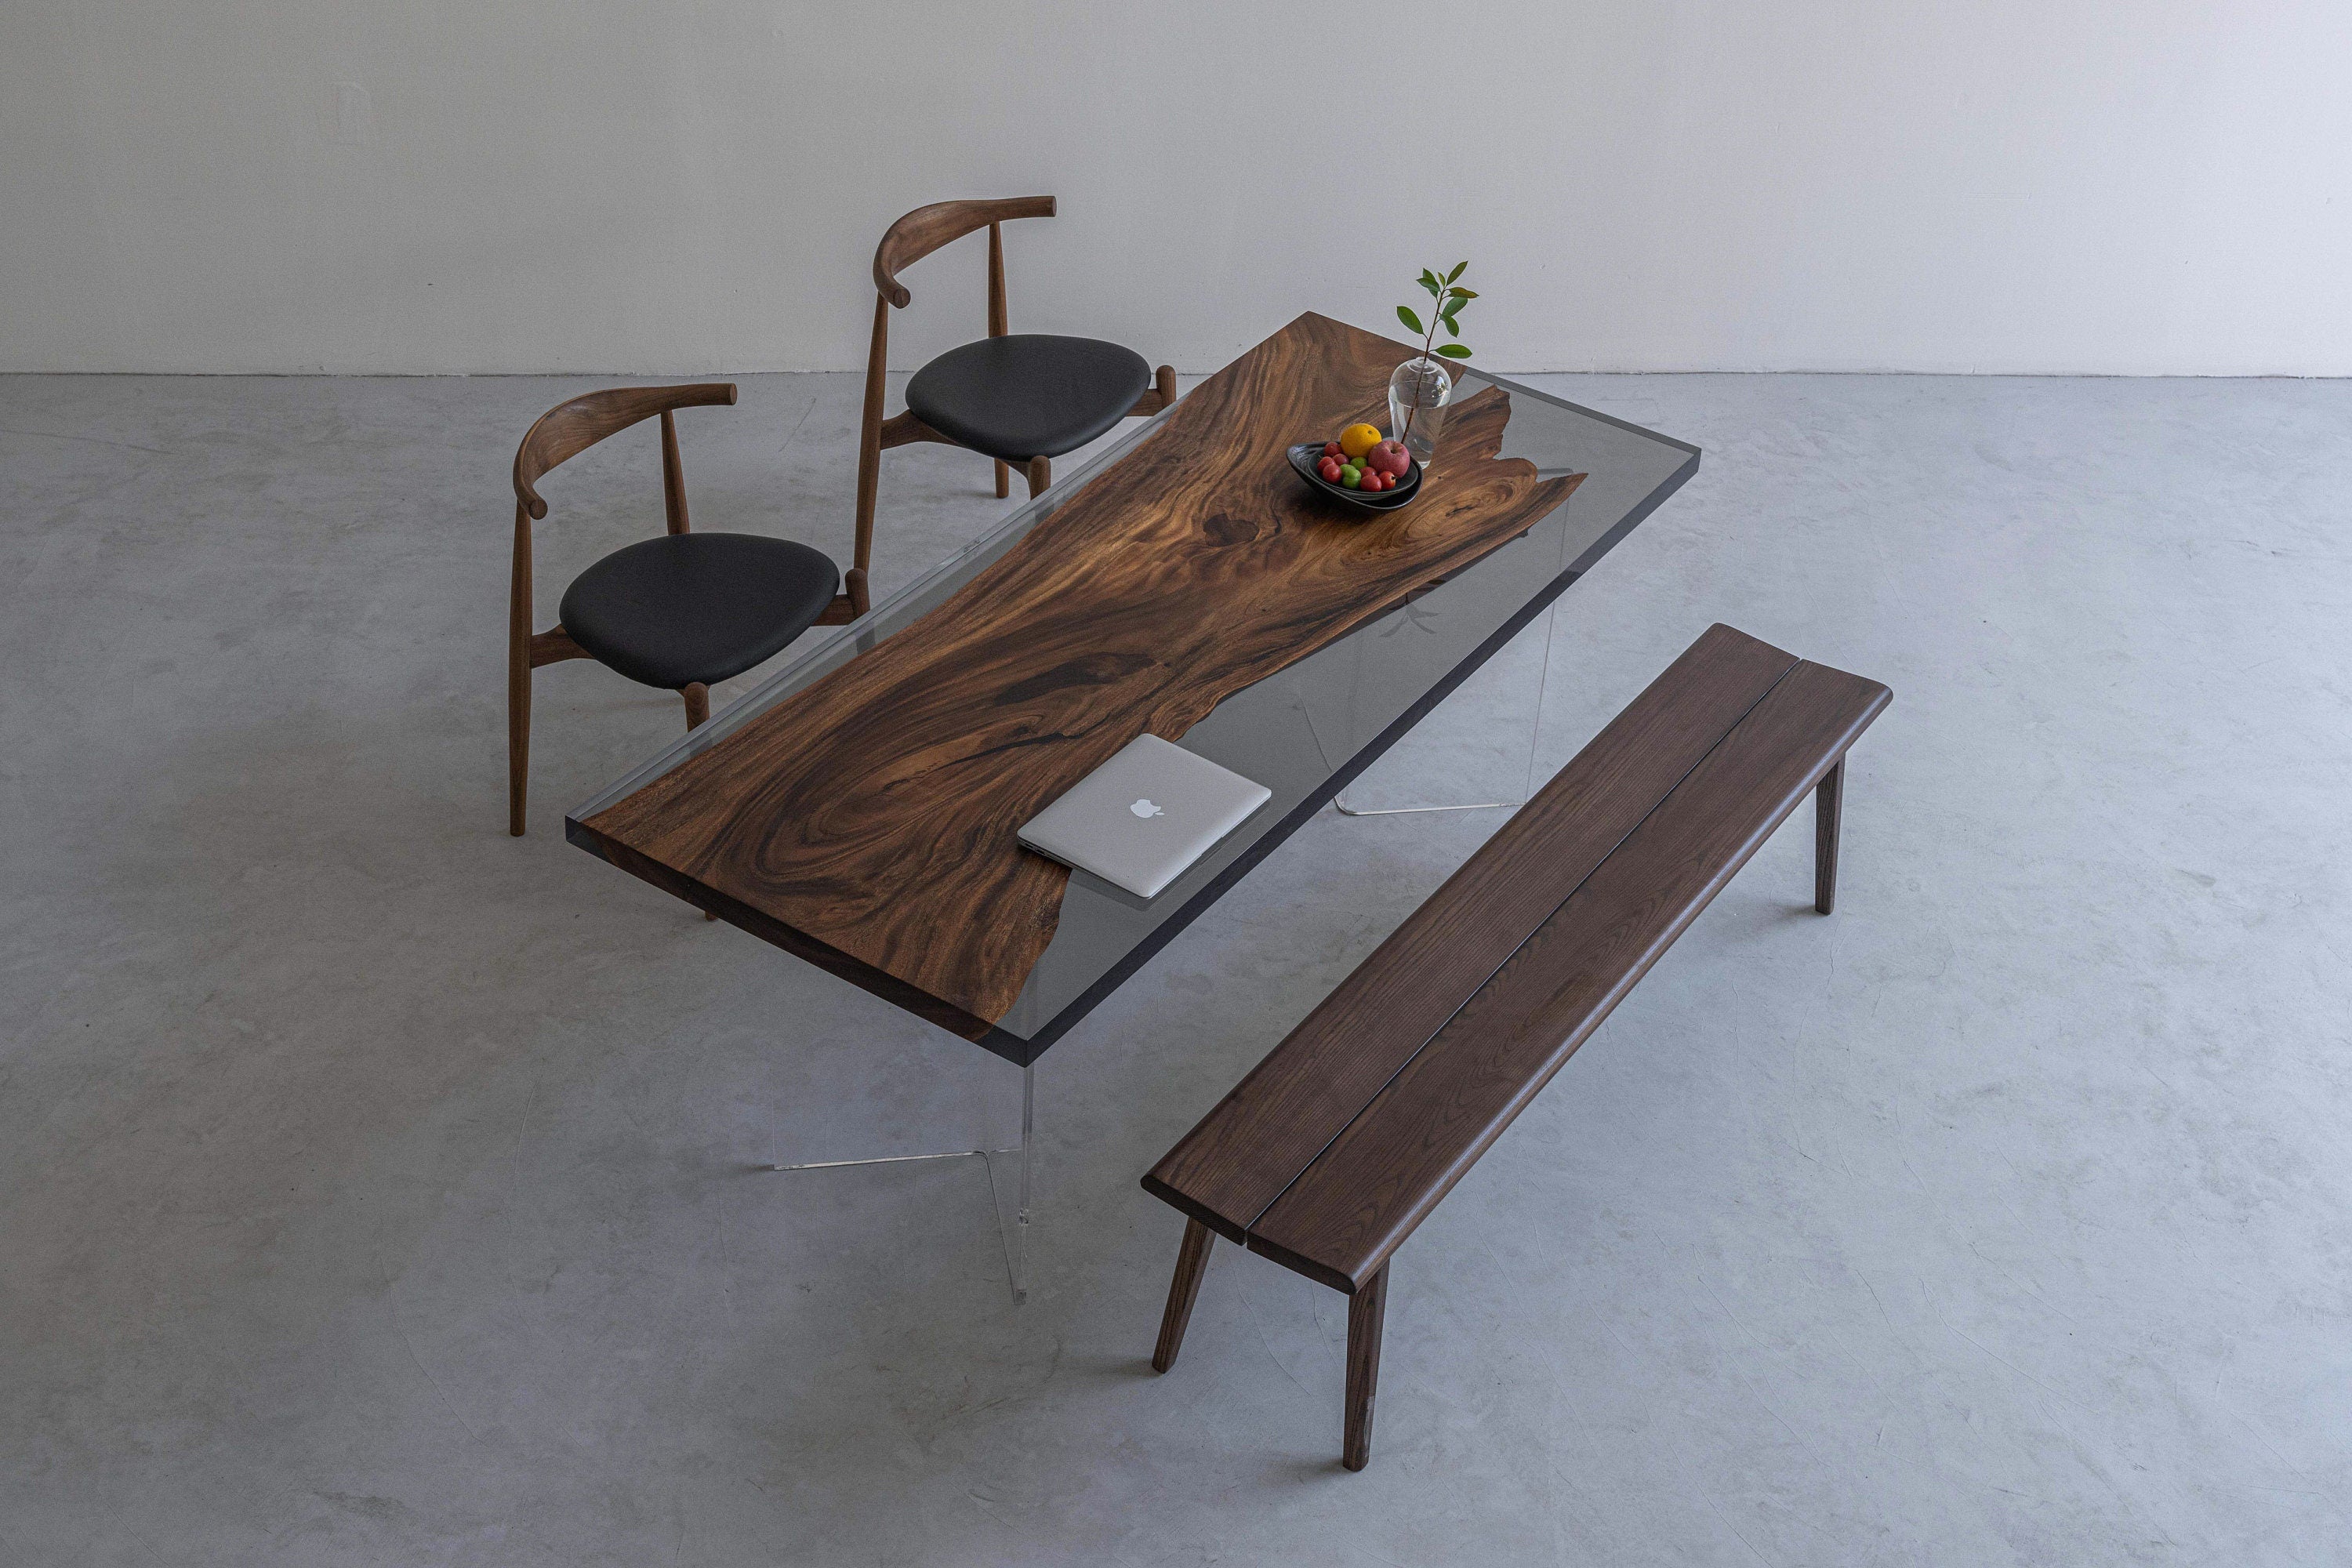 طاولة حديثة جديدة، طاولة إيبوكسي، طاولة راتنجات إيبوكسي، طاولة نهرية، وليس خشب زيتون، مكتب إيبوكسي